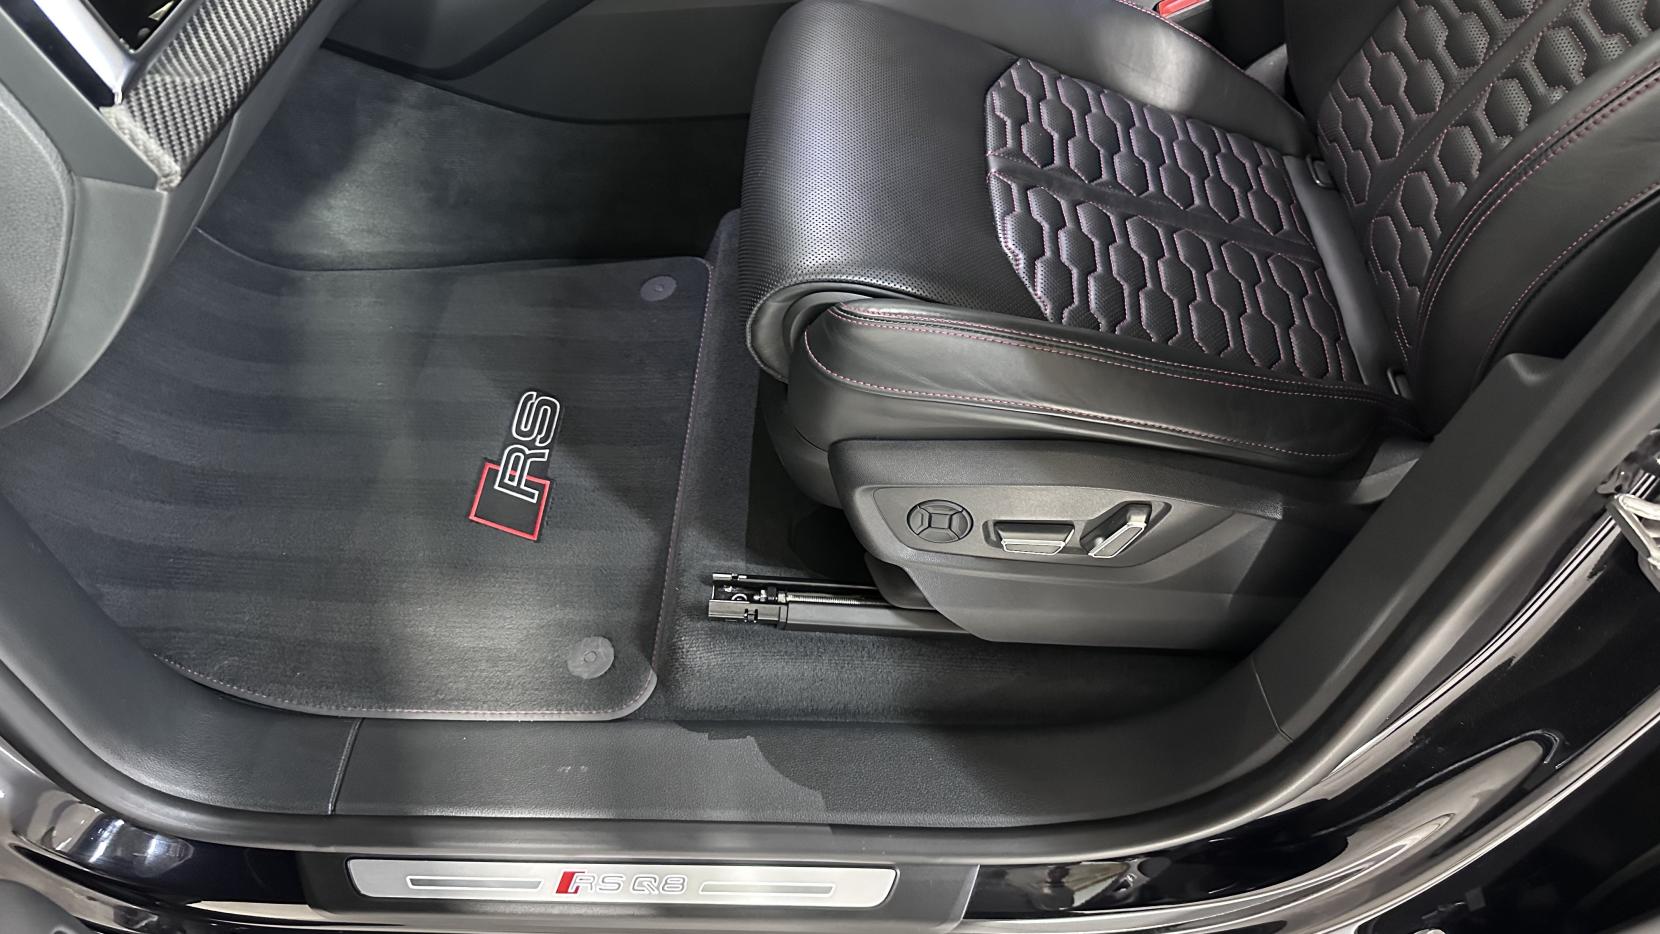 Audi RSQ8 4.0 TFSI V8 Carbon Black SUV 5dr Petrol Tiptronic quattro Euro 6 (s/s) (600 ps)